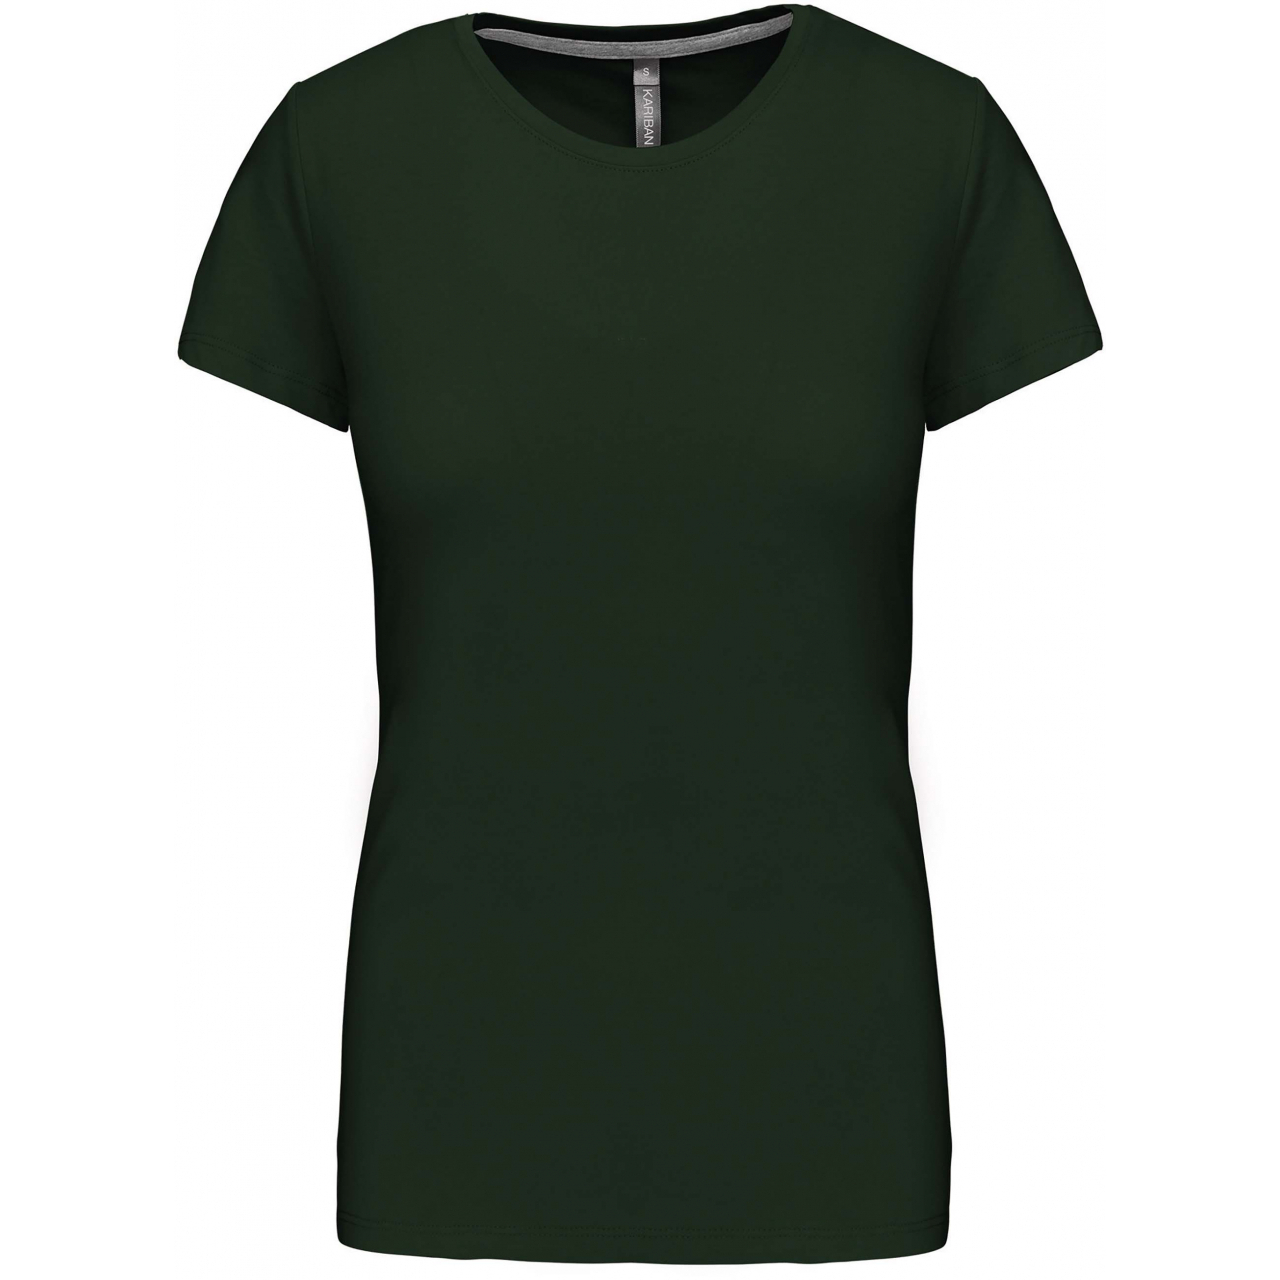 Dámské tričko Kariban s krátkým rukávem - tmavě zelené, L